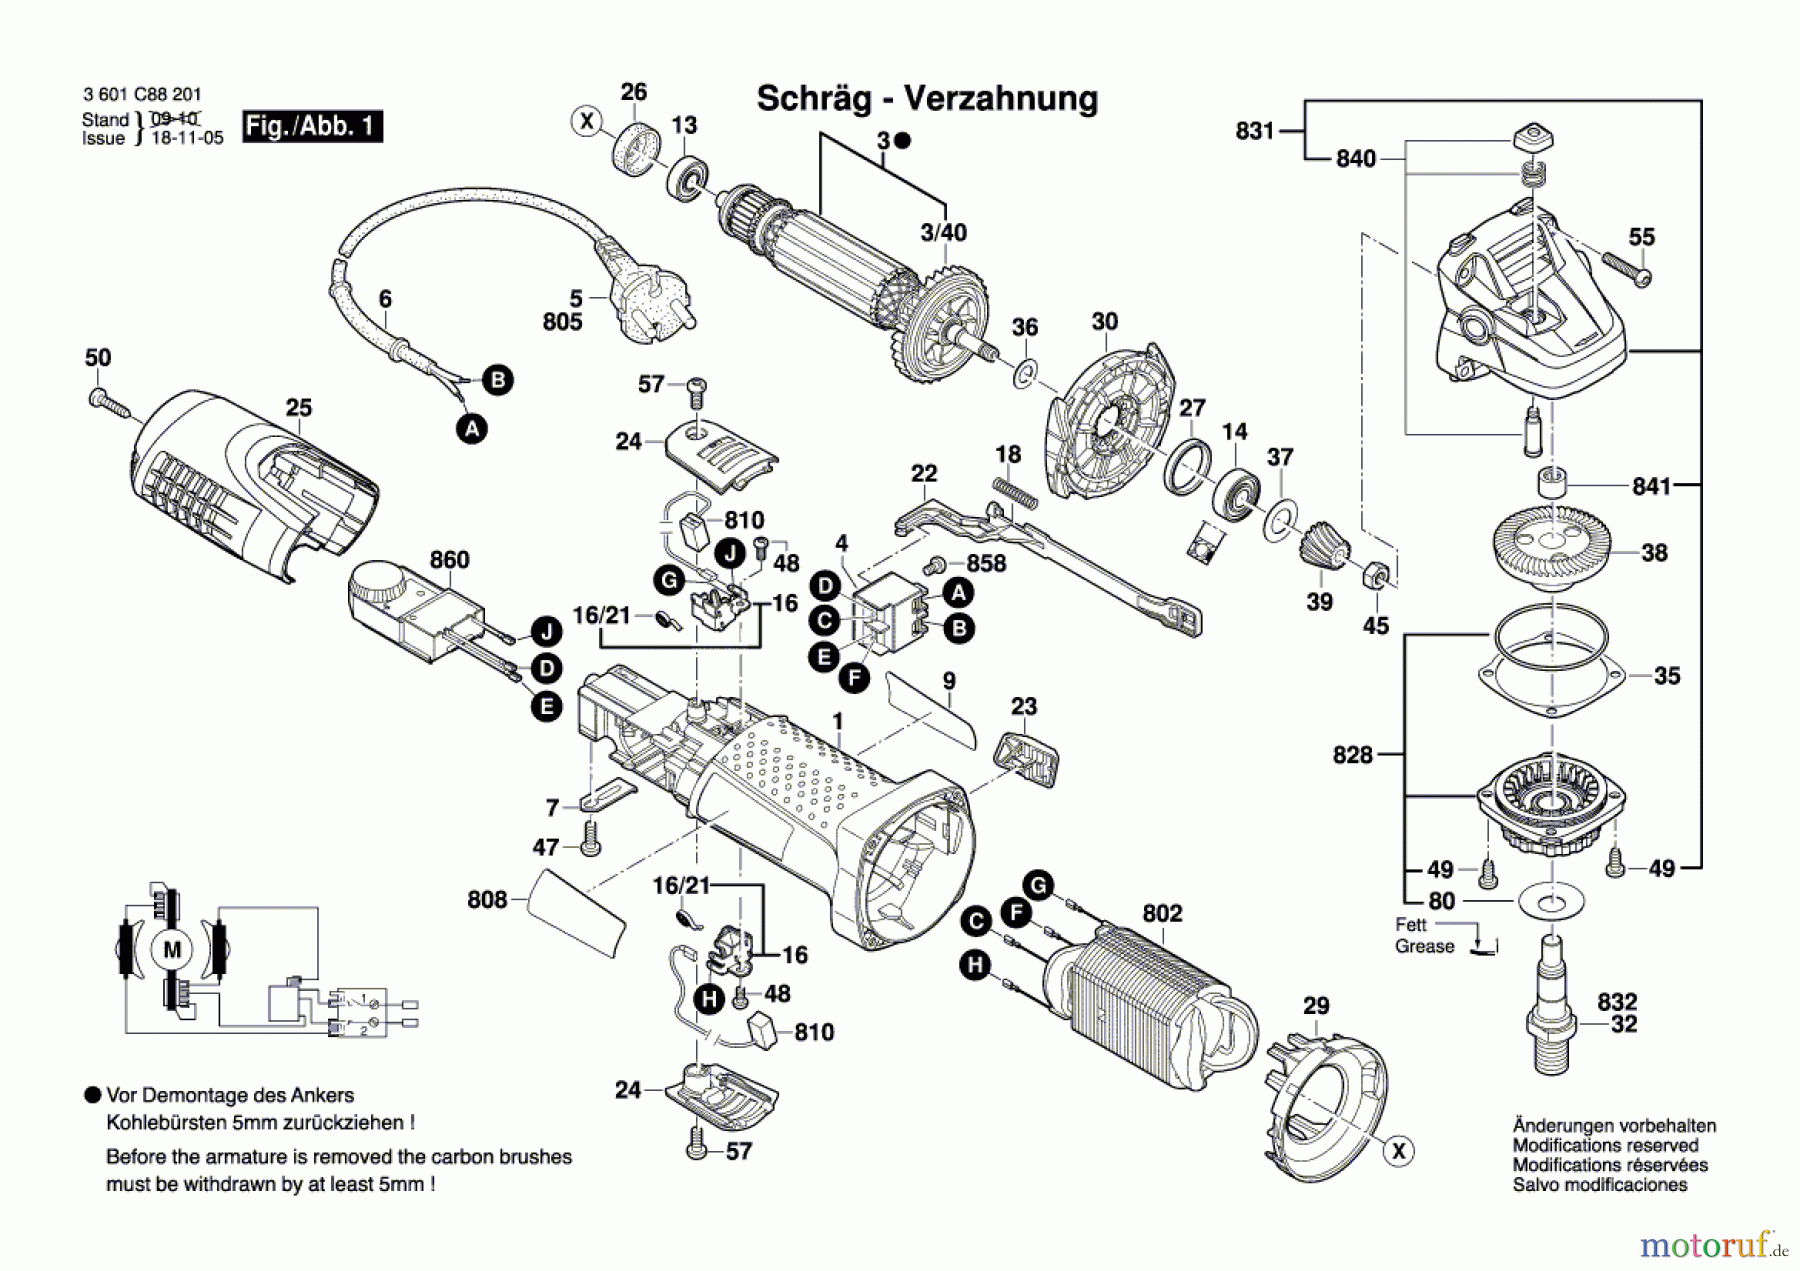  Bosch Werkzeug Winkelschleifer GWS 7-115 E Seite 1